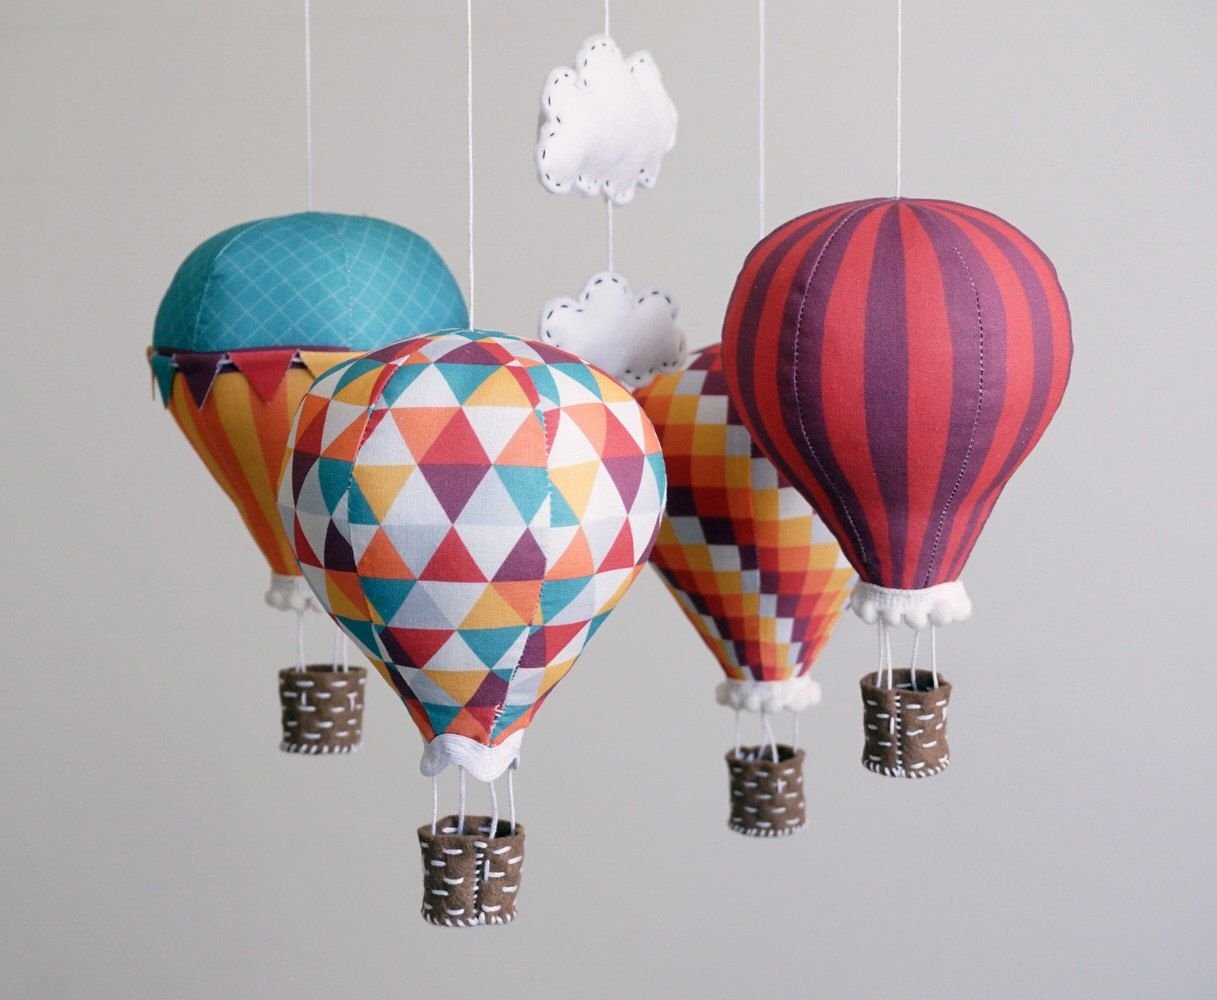 Модели воздушных шаров. Монгольфьер воздушный шар. Декоративный воздушный шар. Корзинка для воздушного шара. Воздушный шар из ткани.